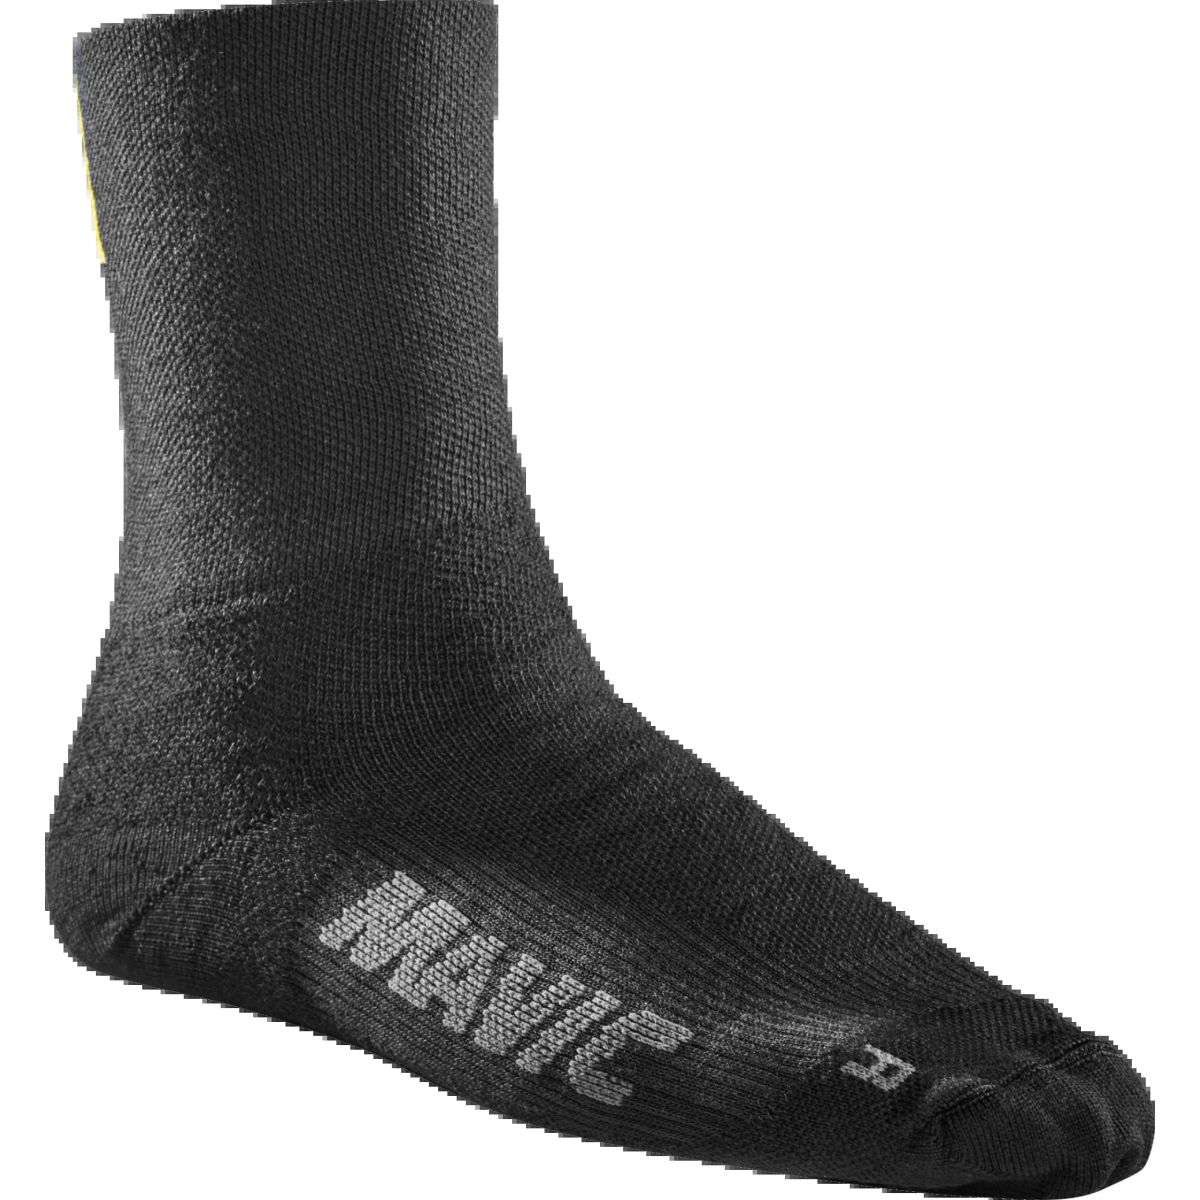 Calcetines de invierno Mavic essential Thermo Sock PARA EL FRÍO EXTREMO en mtb o carretera. Color negro